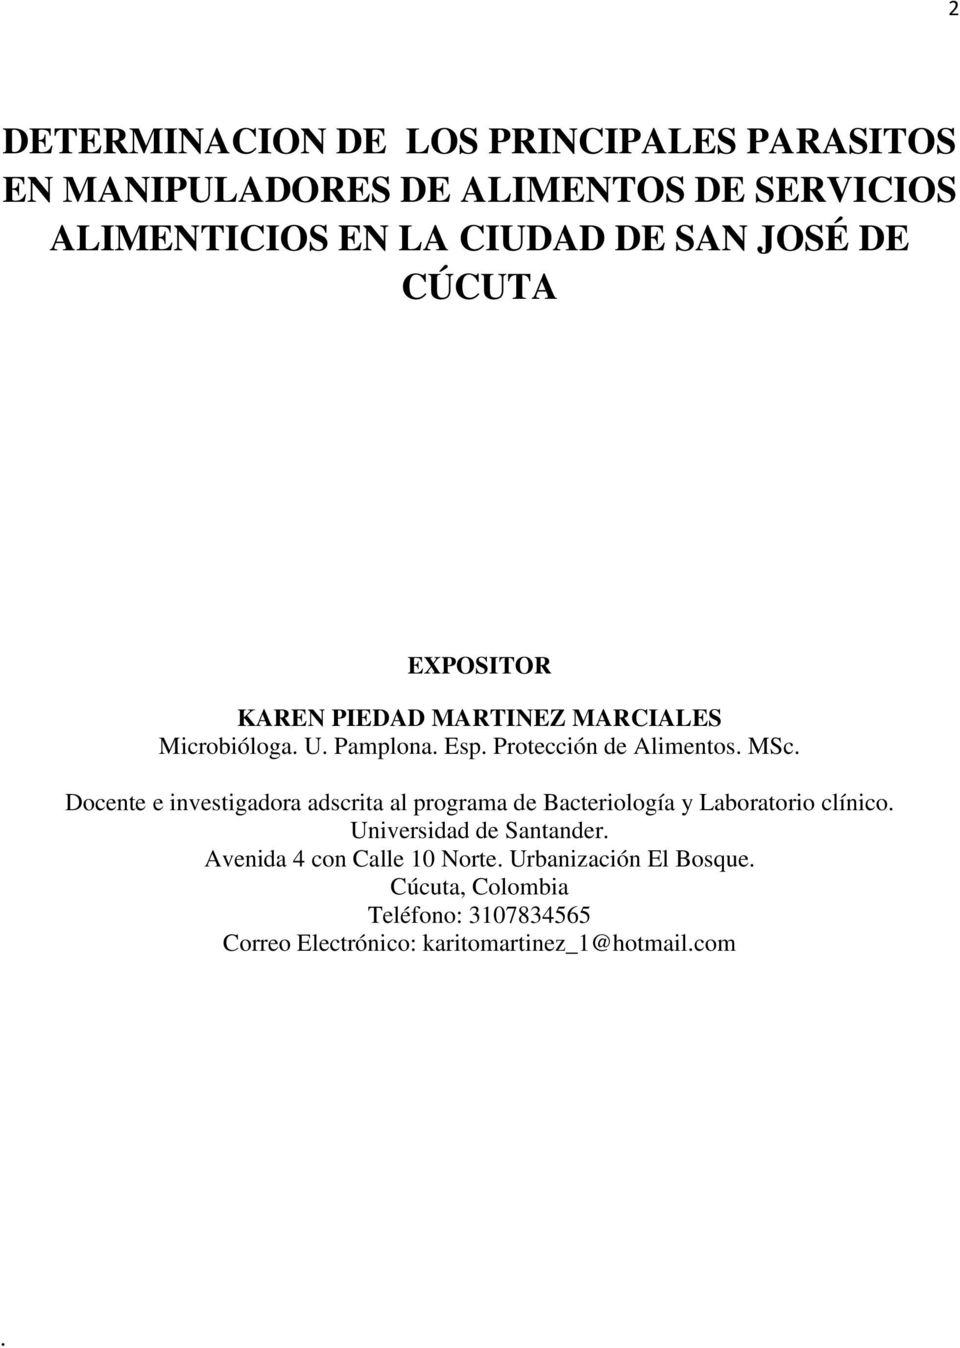 Docente e investigadora adscrita al programa de Bacteriología y Laboratorio clínico. Universidad de Santander.